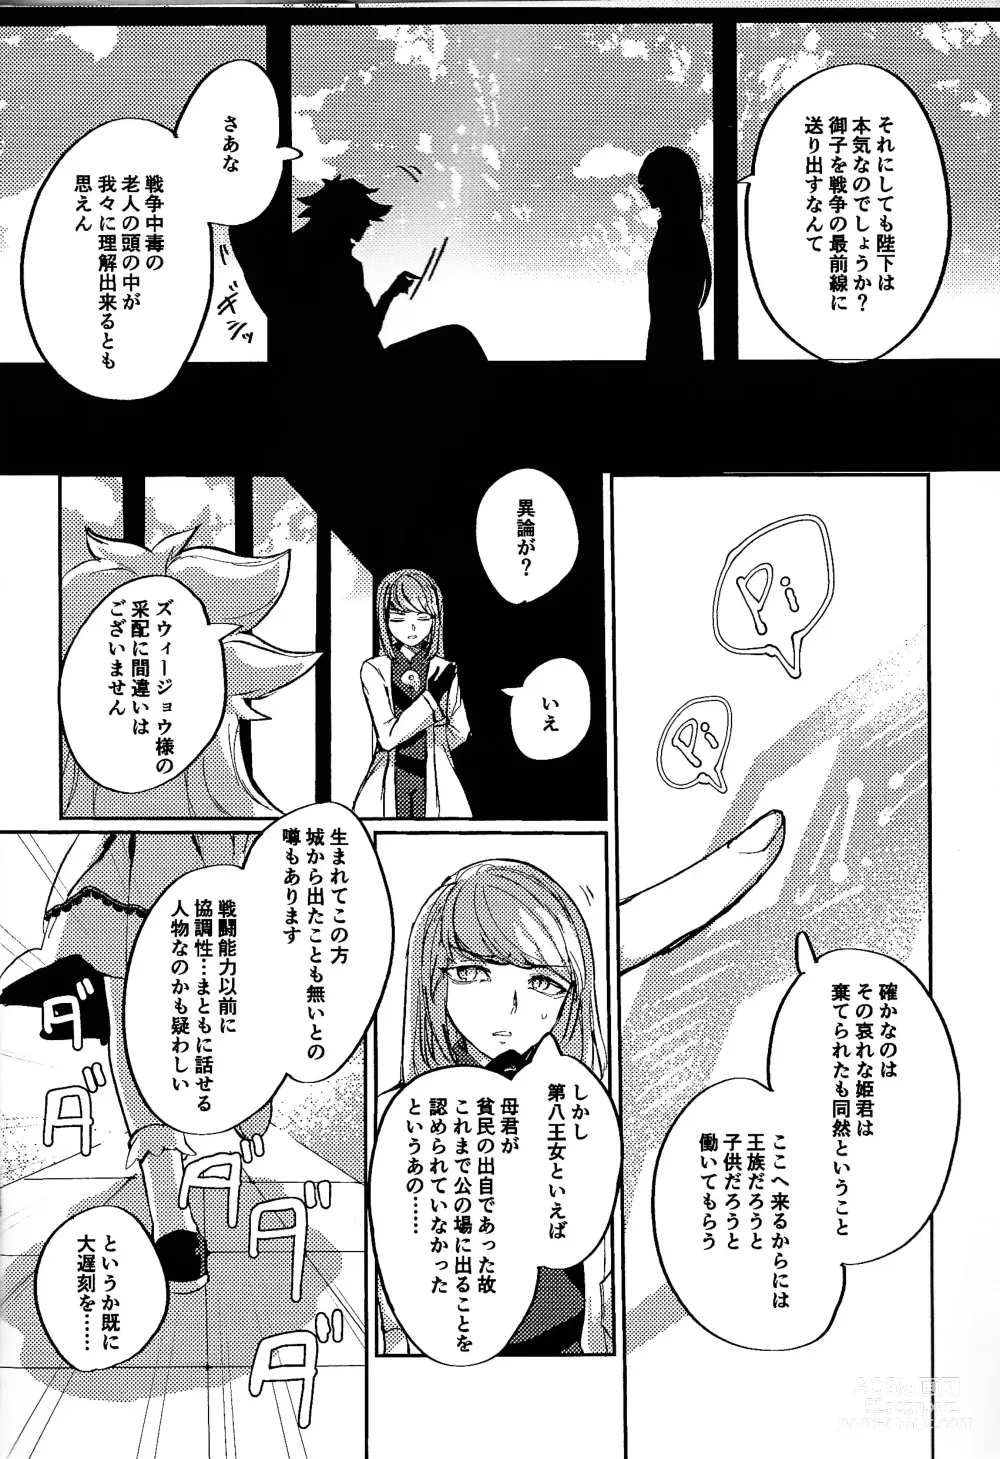 Page 7 of doujinshi Reimei ni sasagu